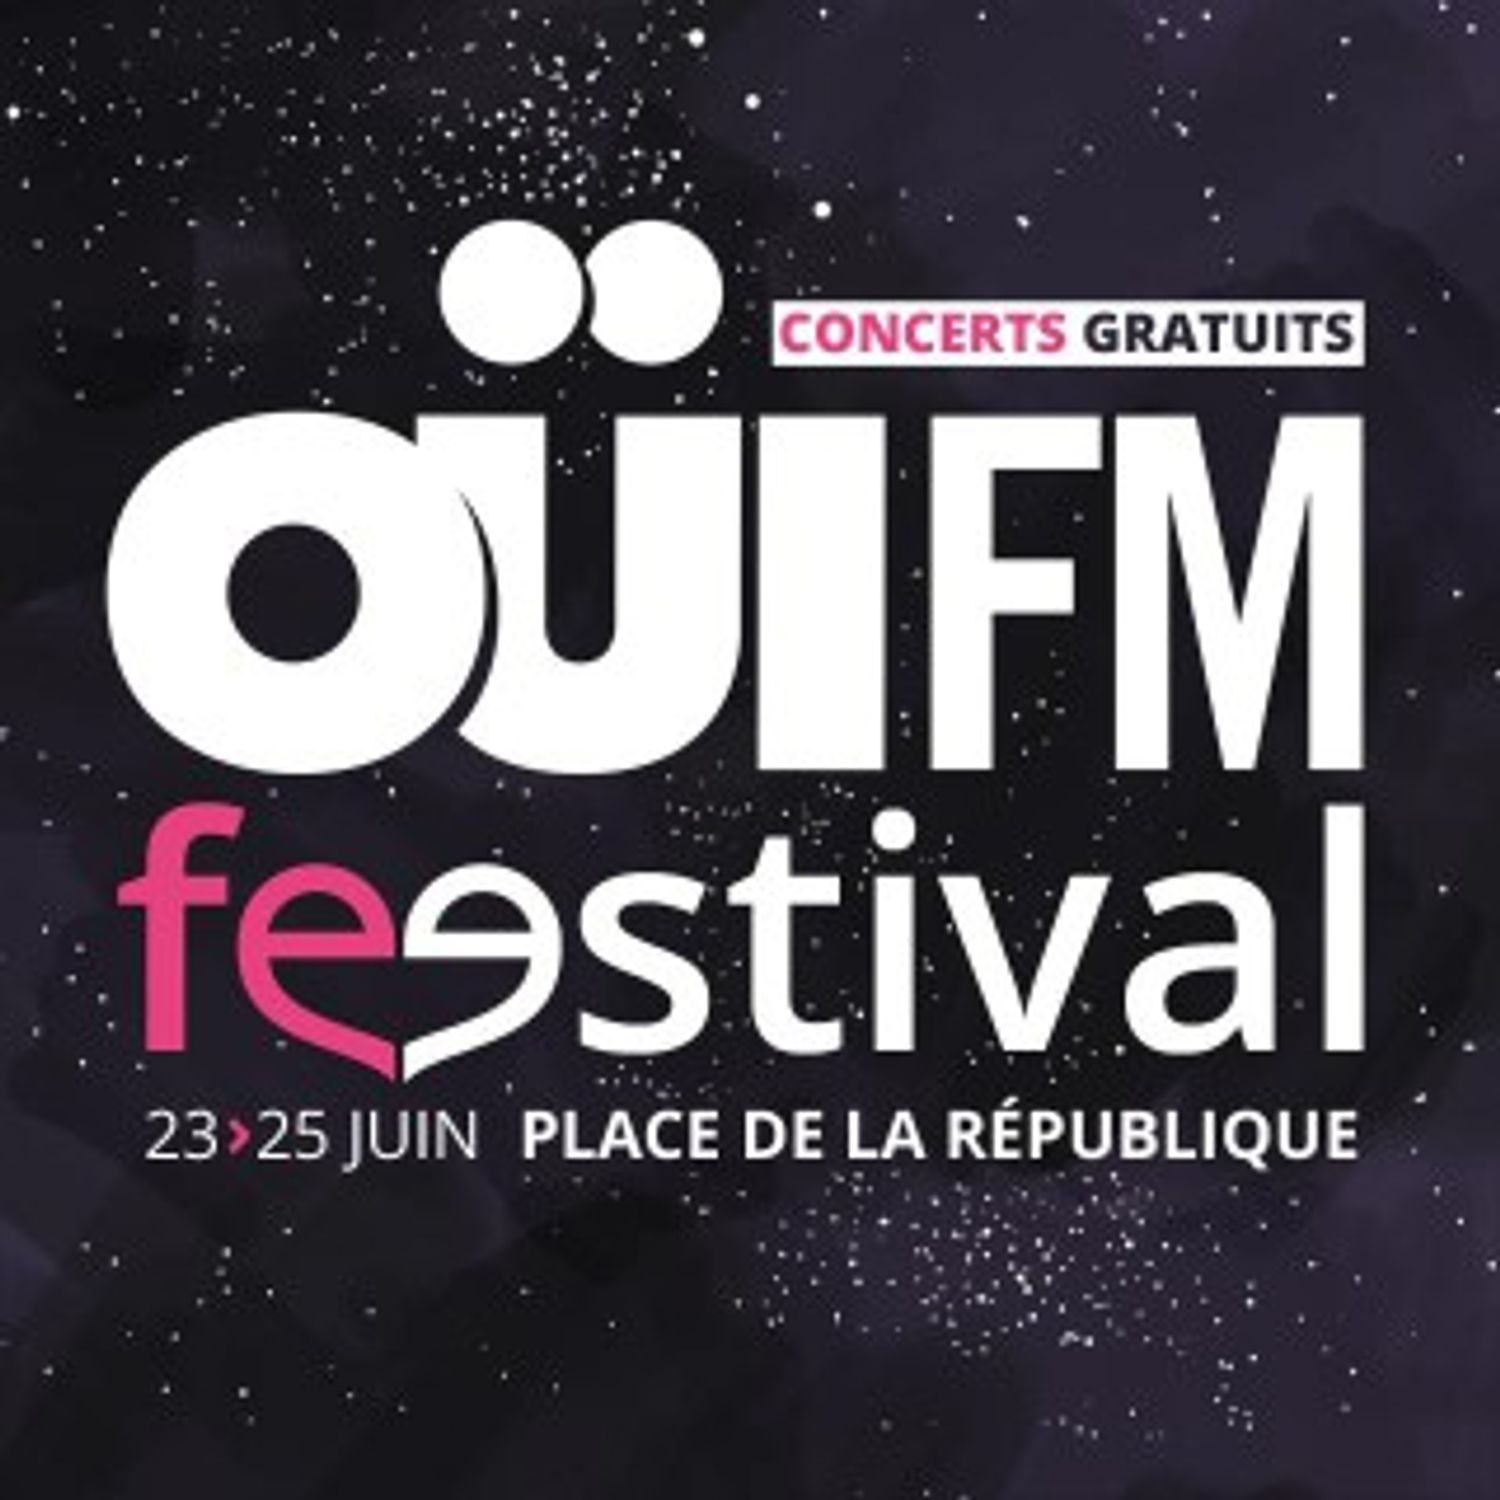 OÜI FM Festival, l'aftershow au Gibus !